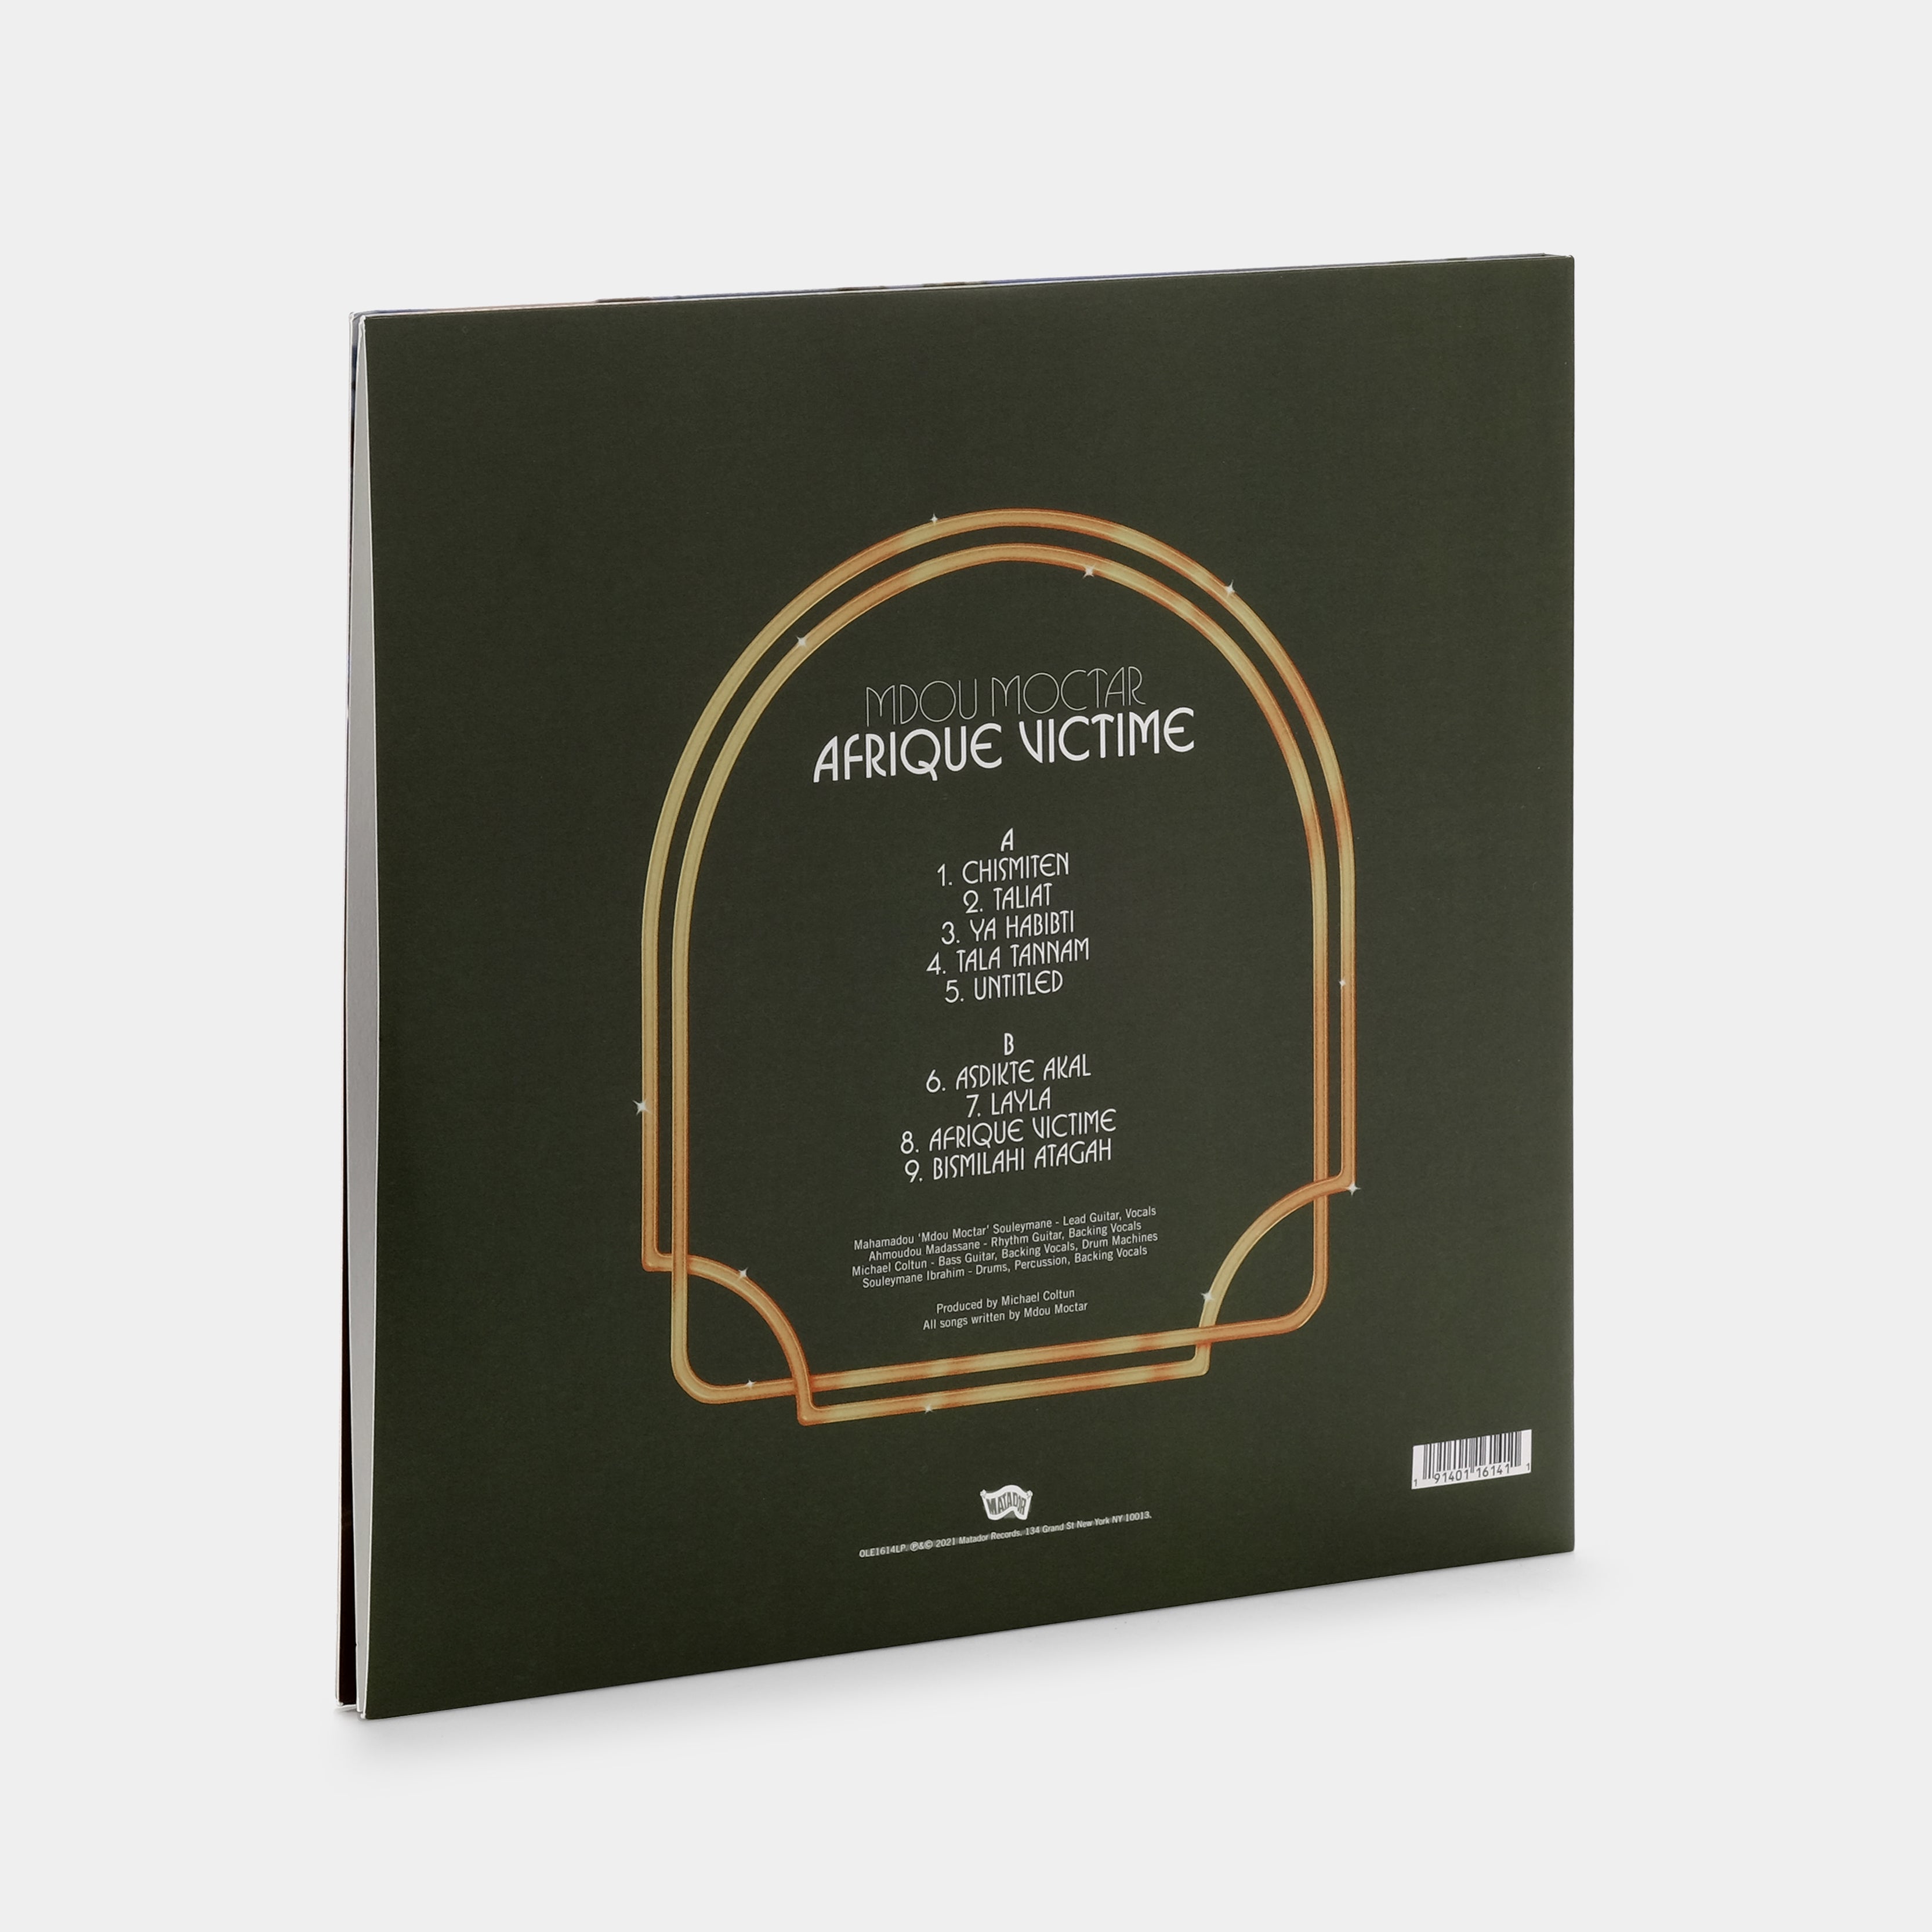 Mdou Moctar - Afrique Victime LP Vinyl Record